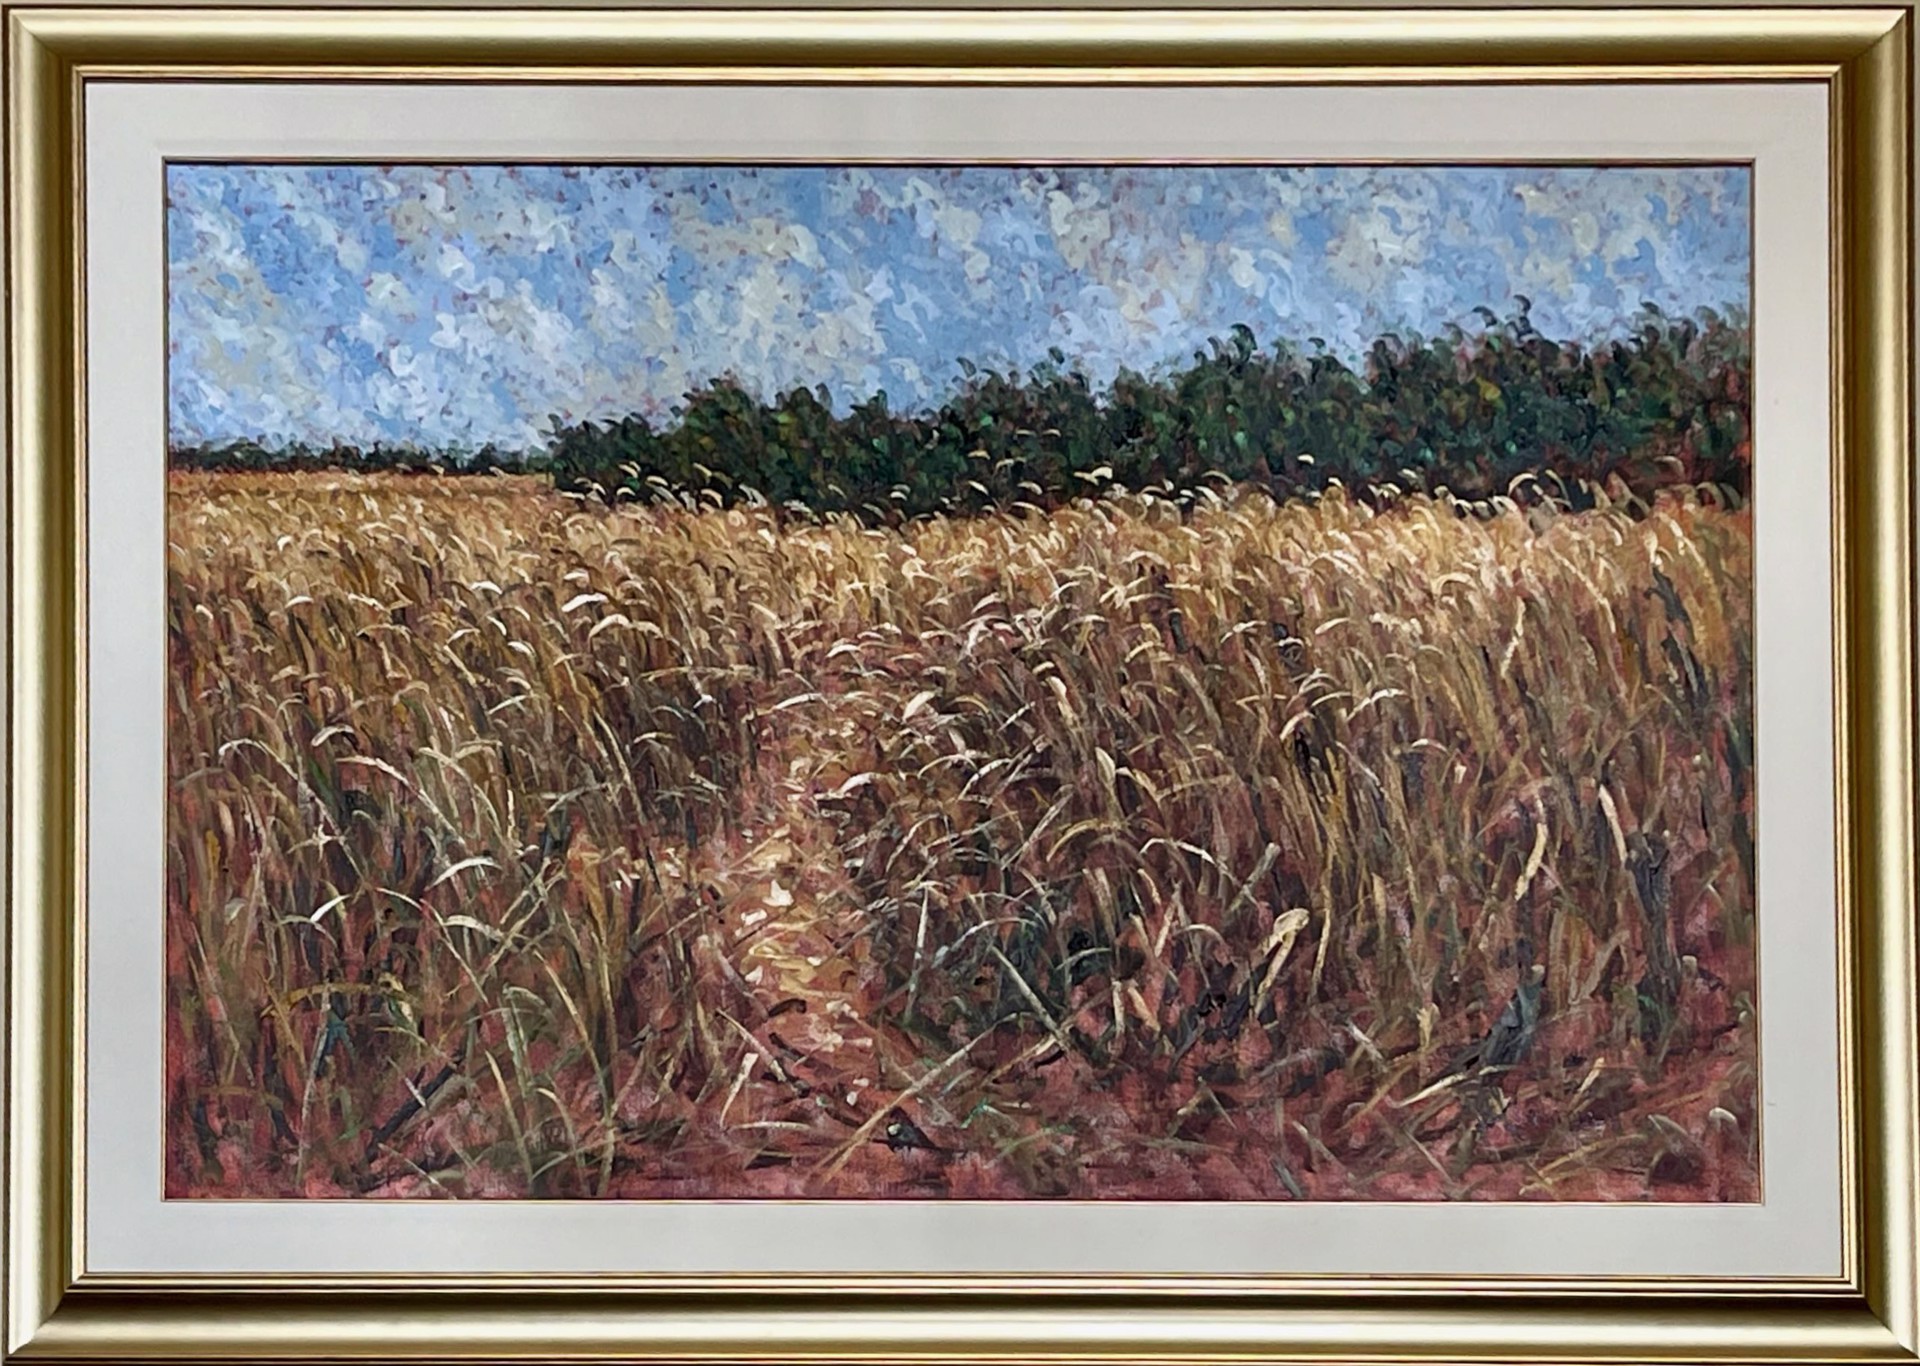 Wheat and Wind by Samir Sammoun